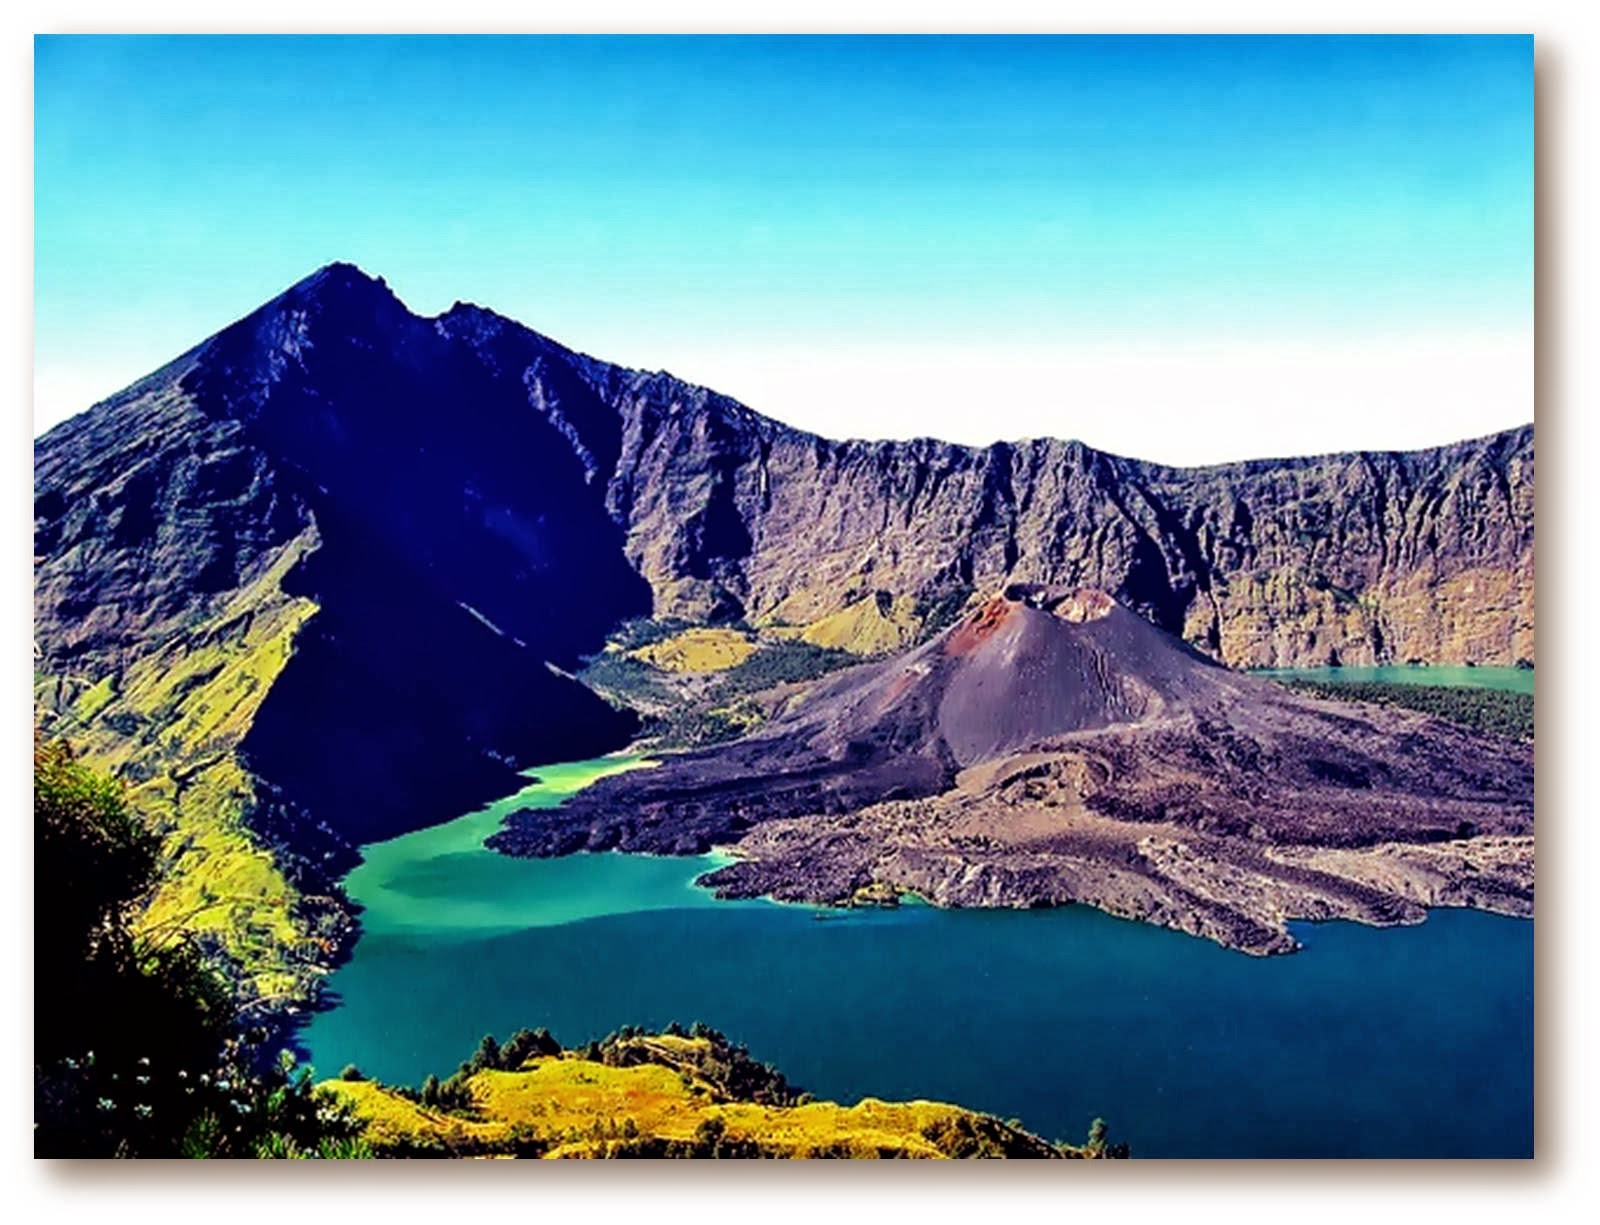 Perjalanan wisata menuju Gunung Rinjani  Lombok Jelajah 